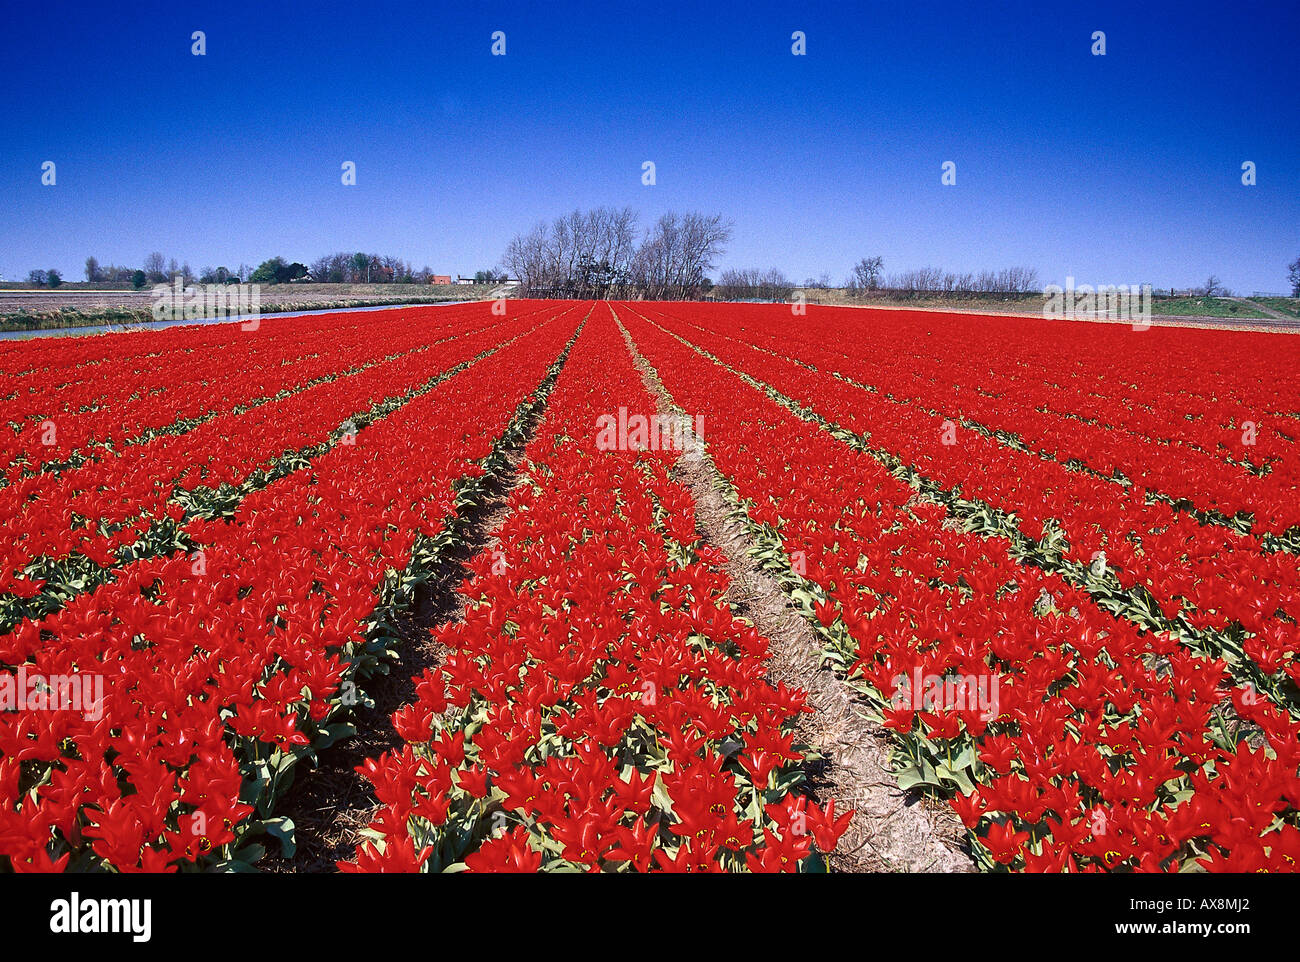 Tulipfield, De Zilk Netherlands Stock Photo